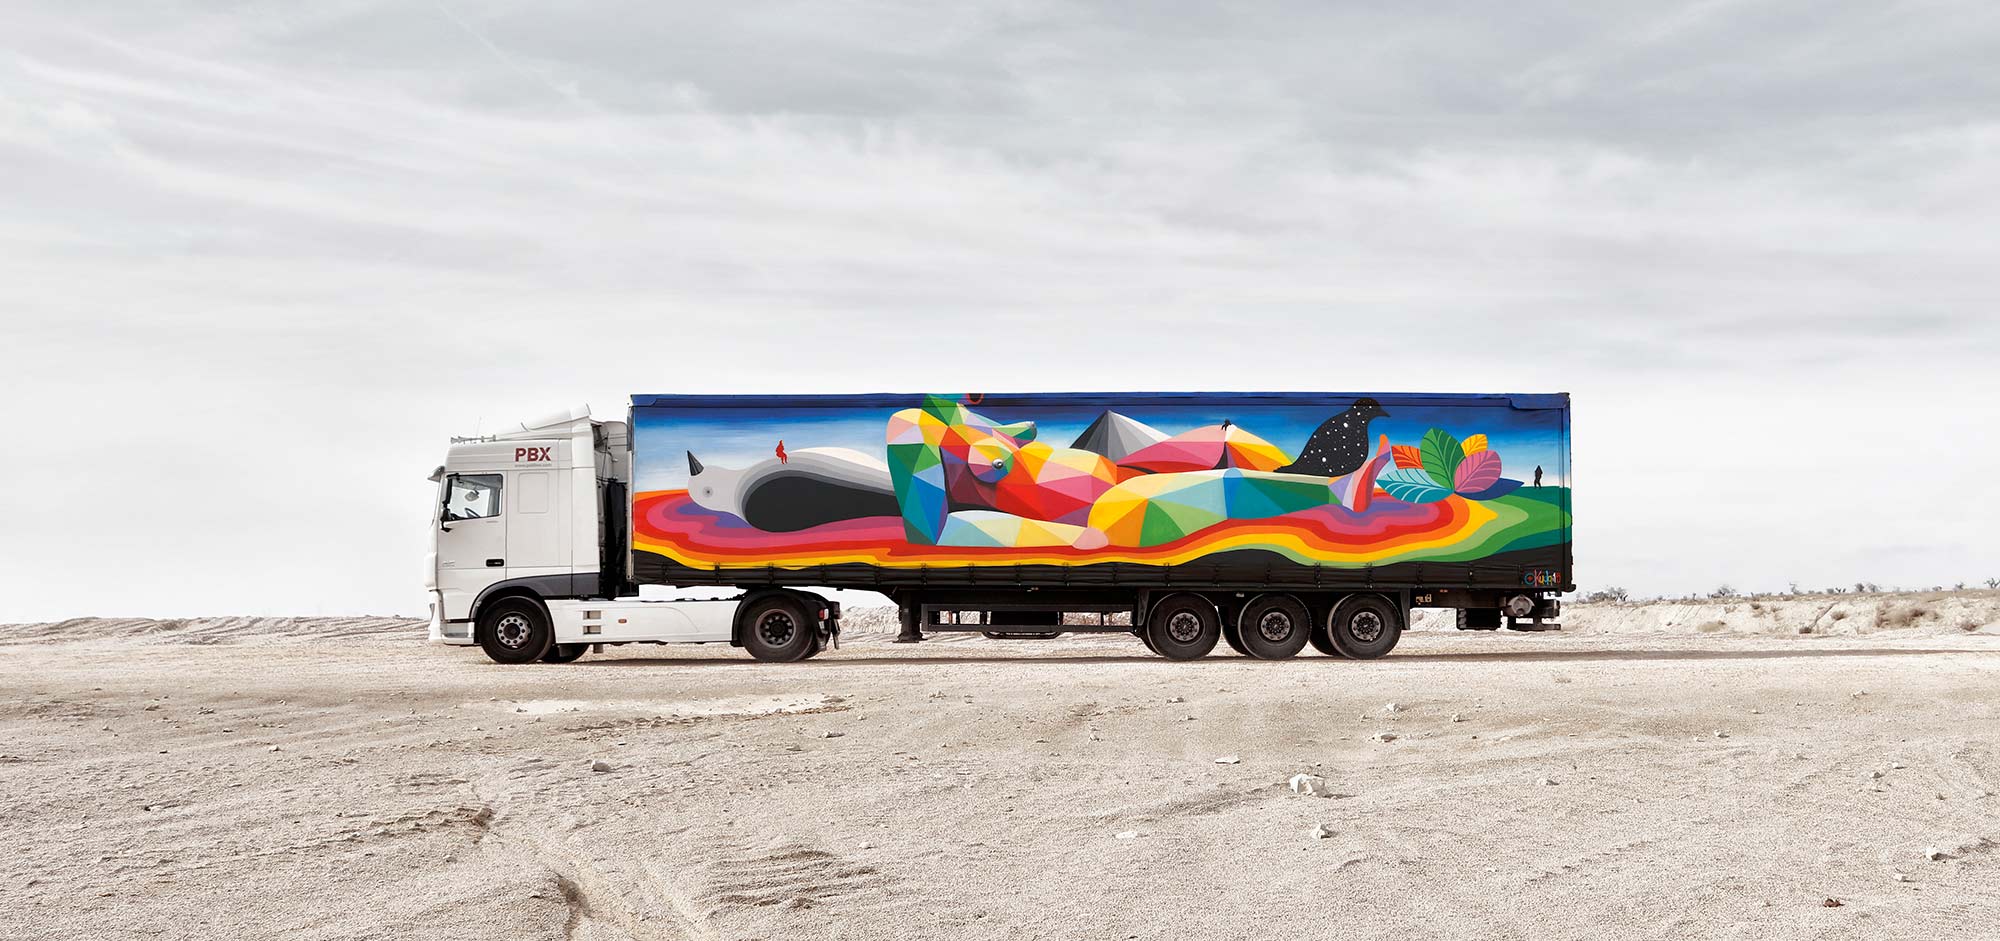 De l’art sur des camions en Espagne